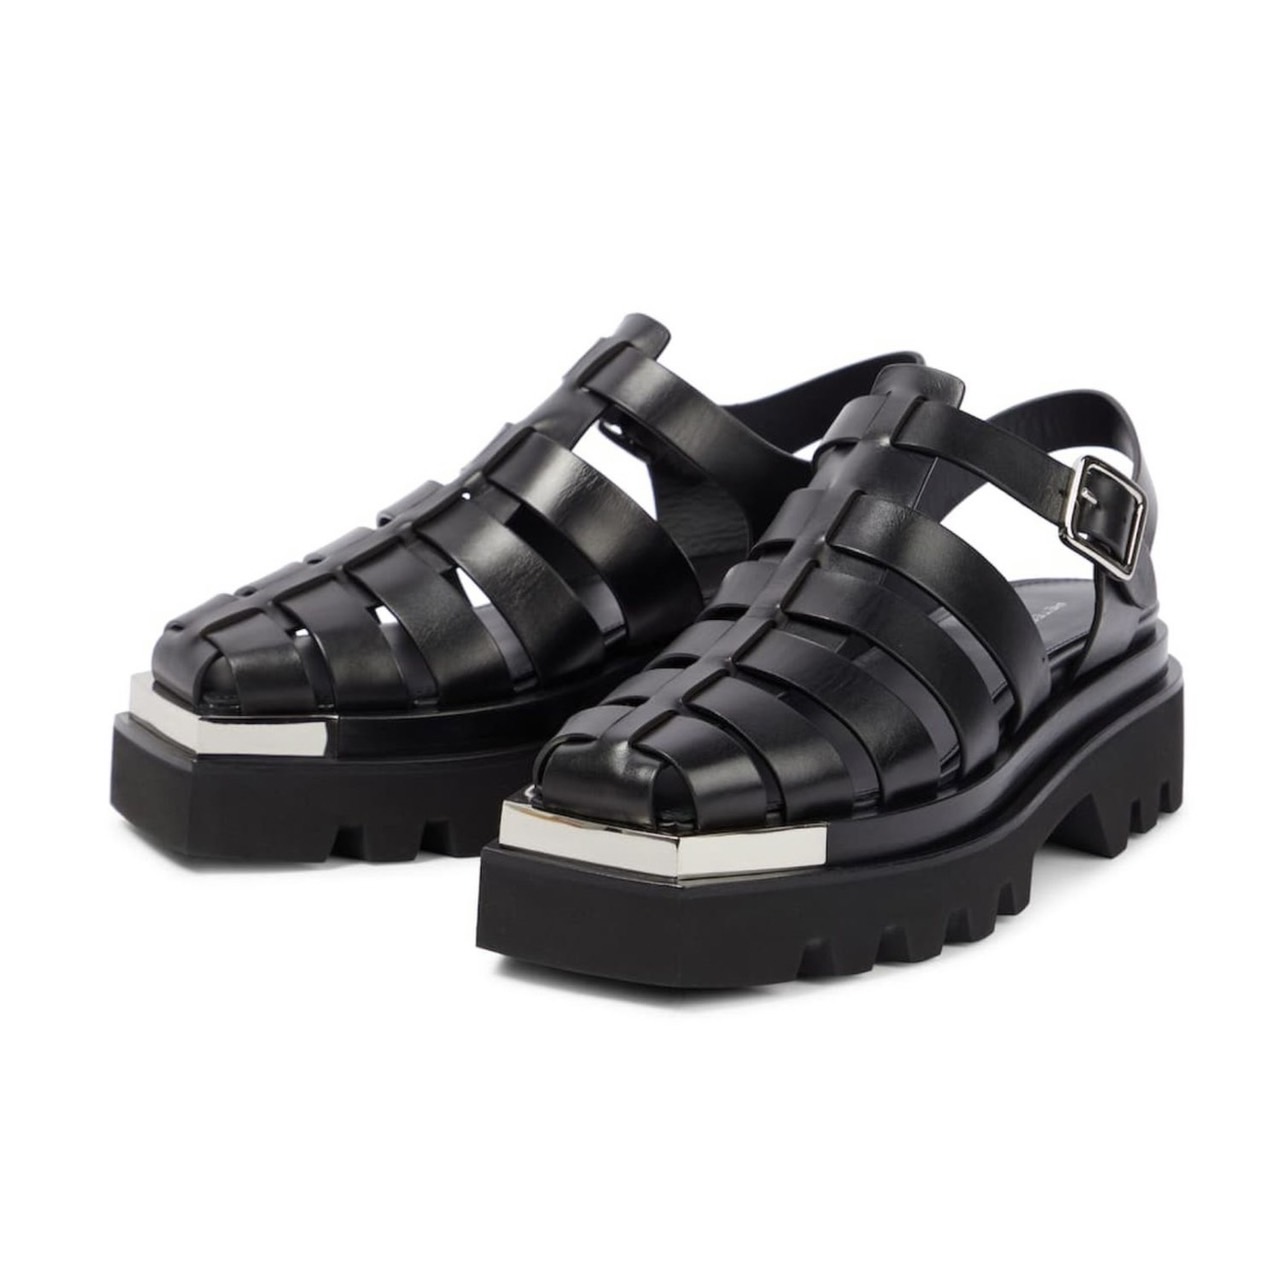 Peter Do Leather platform sandals